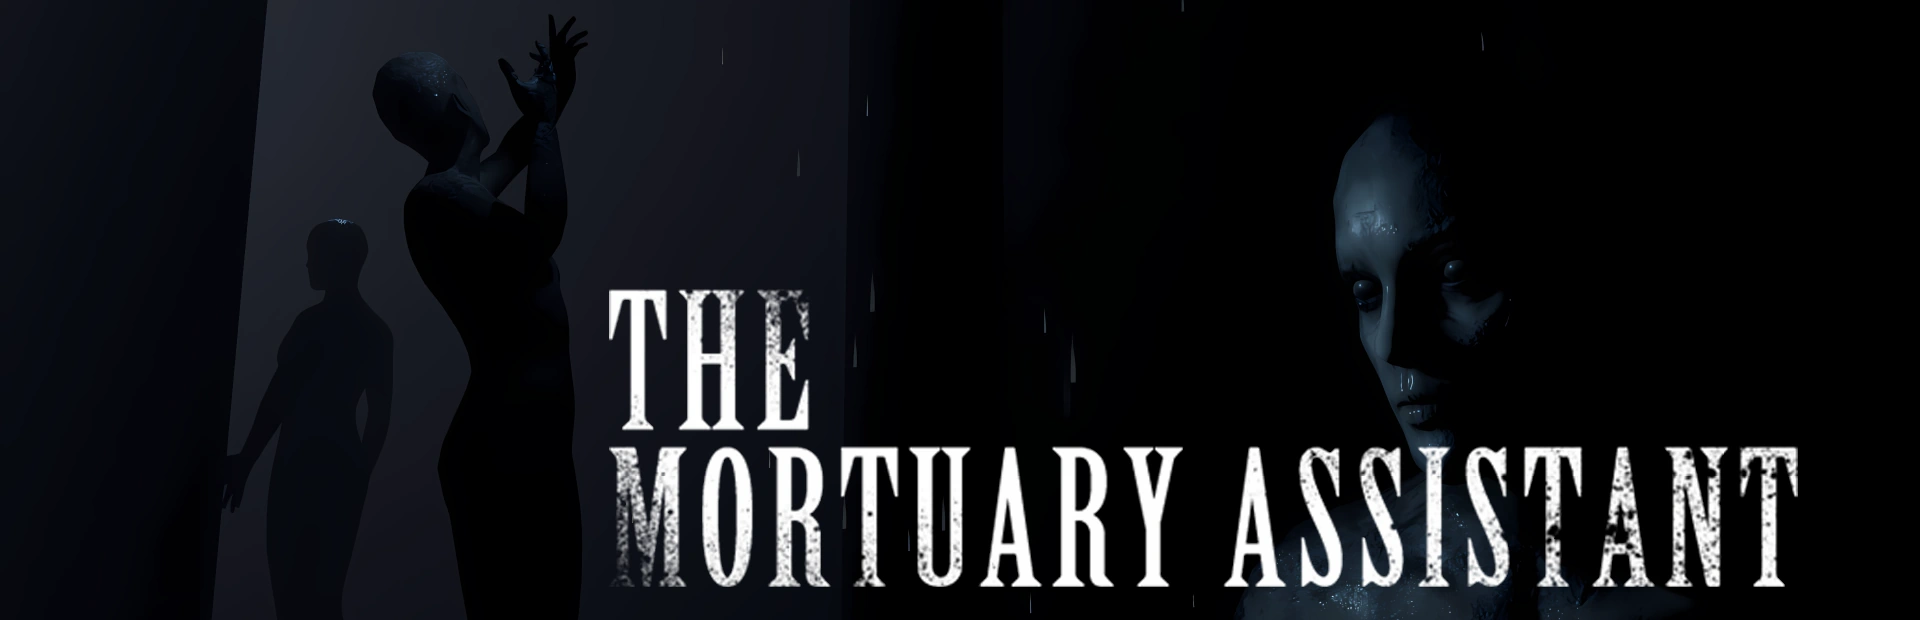 دانلود بازی The Mortuary Assistant برای کامپیوتر | گیمباتو